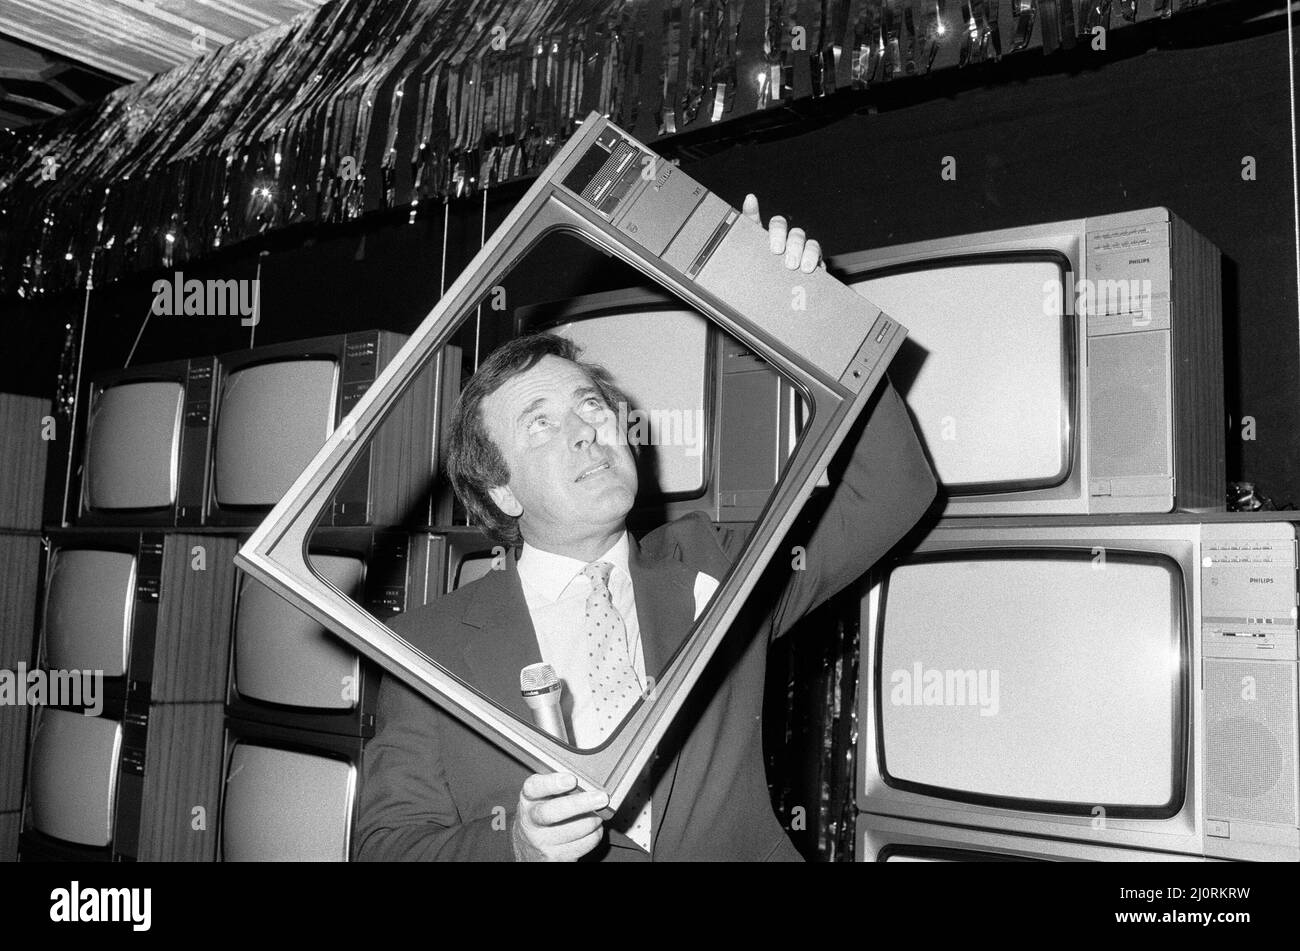 Terry Wogan erhielt heute 100 neue Fernseher. Sie werden von Phillips, den Fernsehern, präsentiert. Sie werden an den NSPCC gehen, der in diesem Jahr sein hundertjähriges Bestehen feiert - 100 Jahre der Unterstützung benachteiligter Kinder. terry Wogan wurde als Großbritanniens Lieblingsfigur des männlichen Fernsehens akzeptiert. 6.. September 1984. Stockfoto